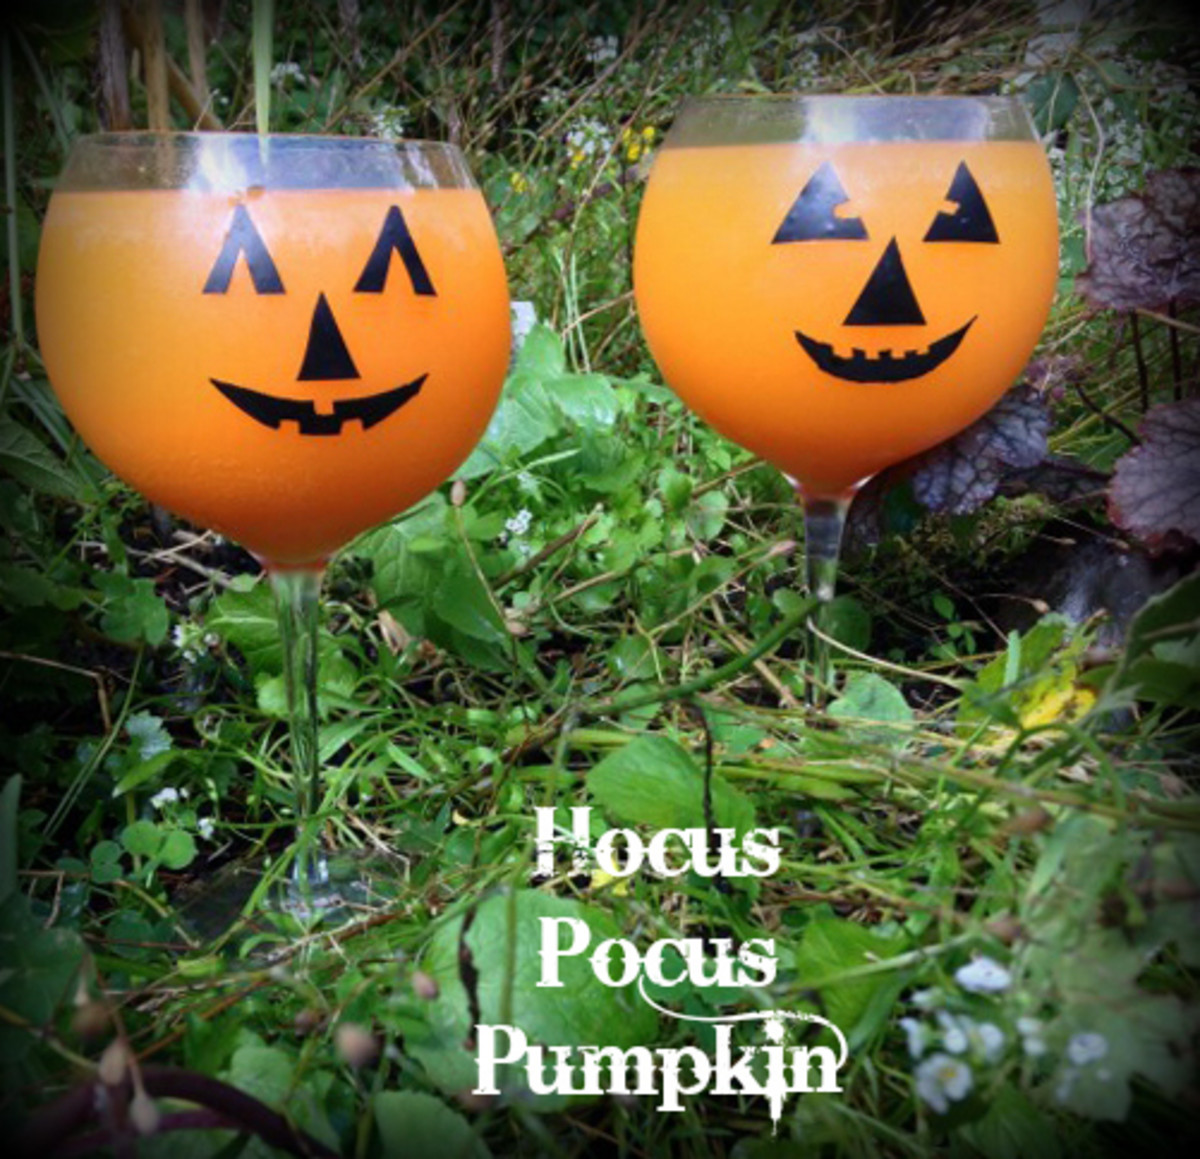 Hocus pocus pumpkin